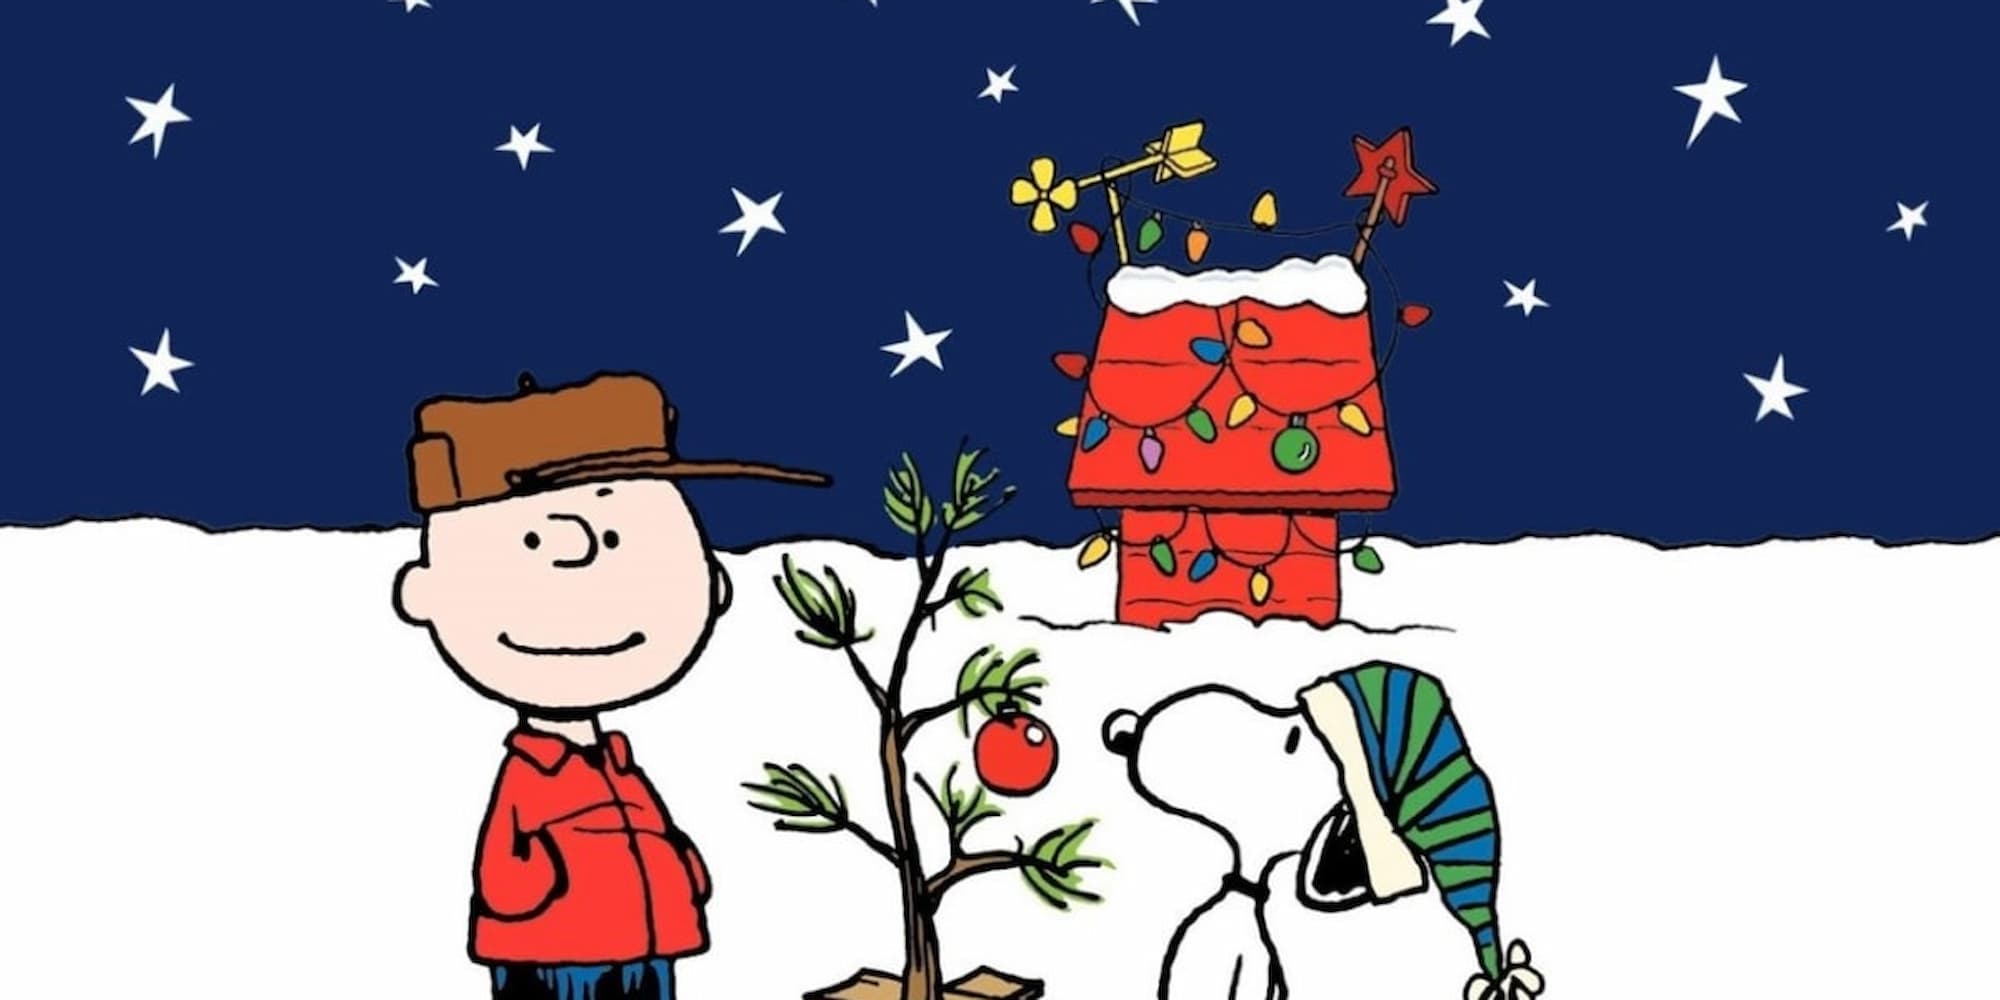 A Charlie Brown Christmas screenshot